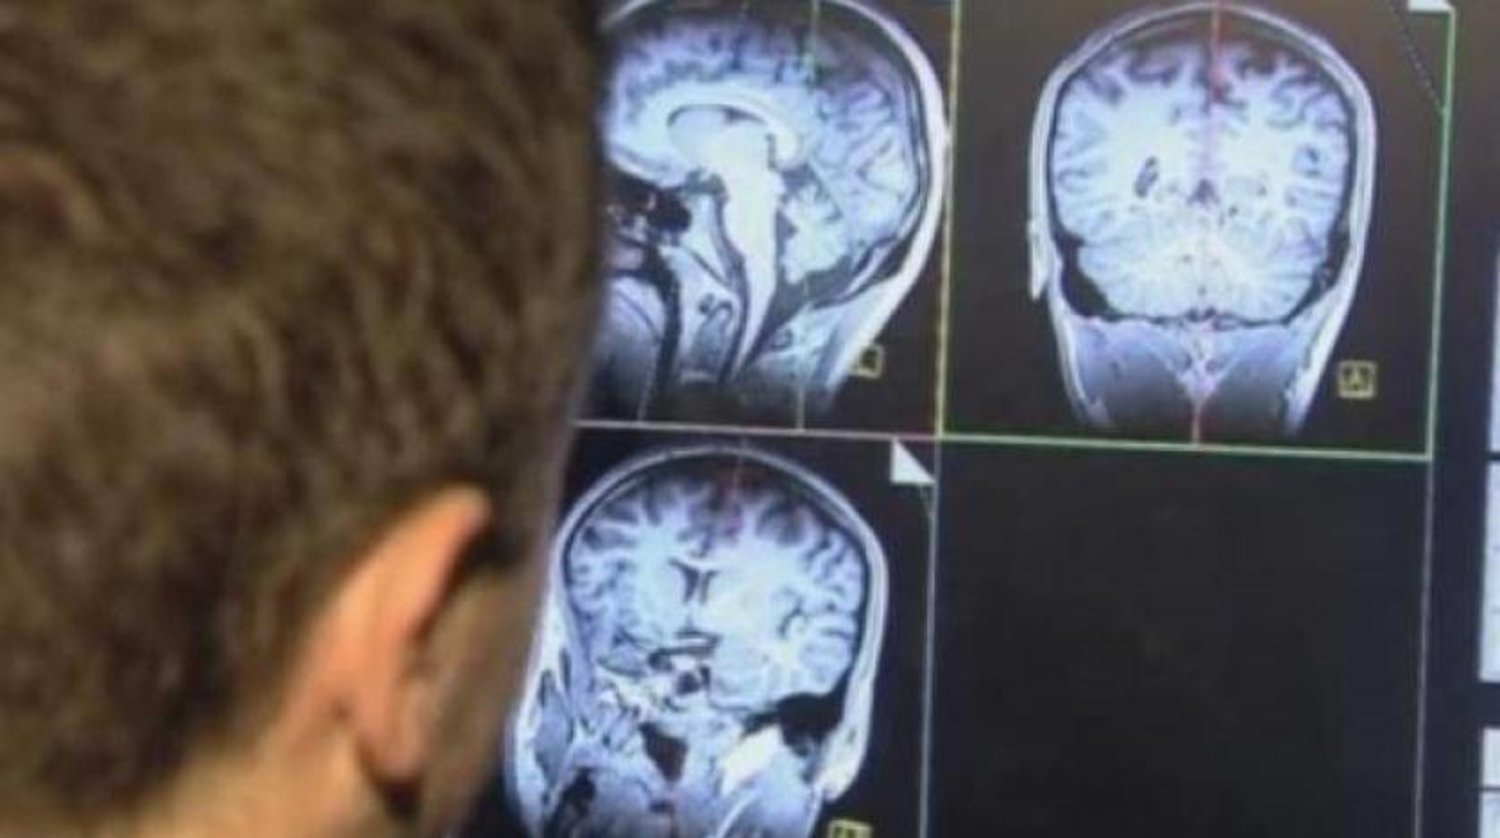 السكتة الدماغية... قد تسبب 10 ملايين حالة وفاة سنوياً بحلول عام 2050